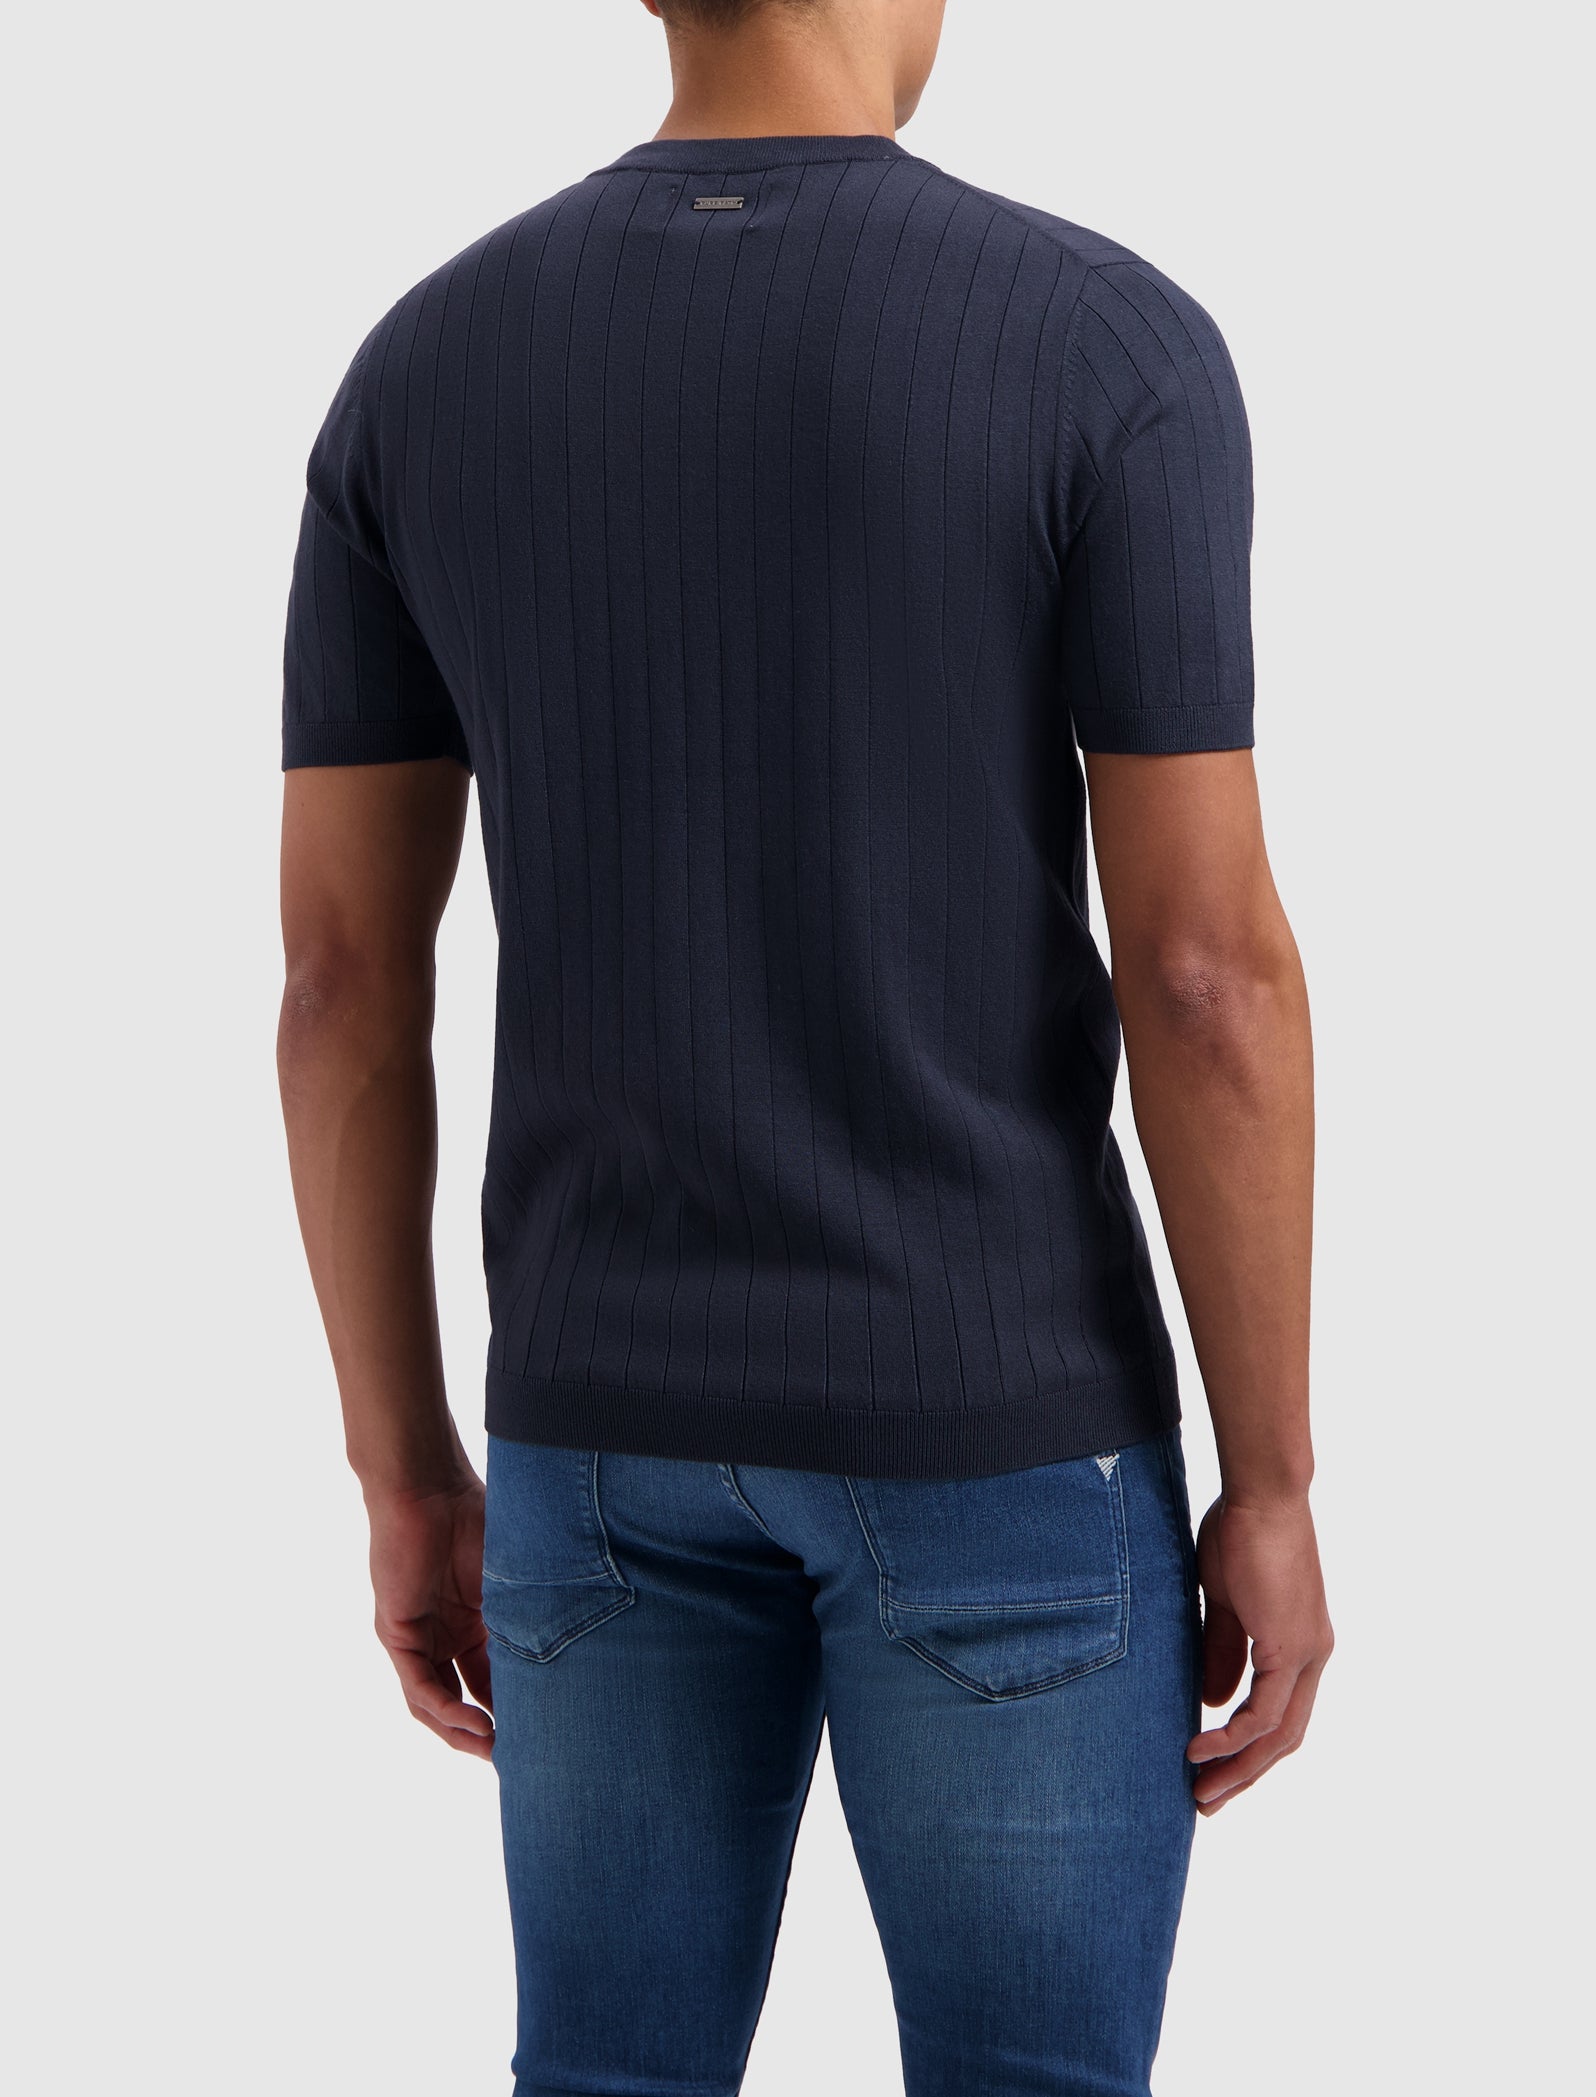 Vertical Striped Knitwear T-shirt | Navy